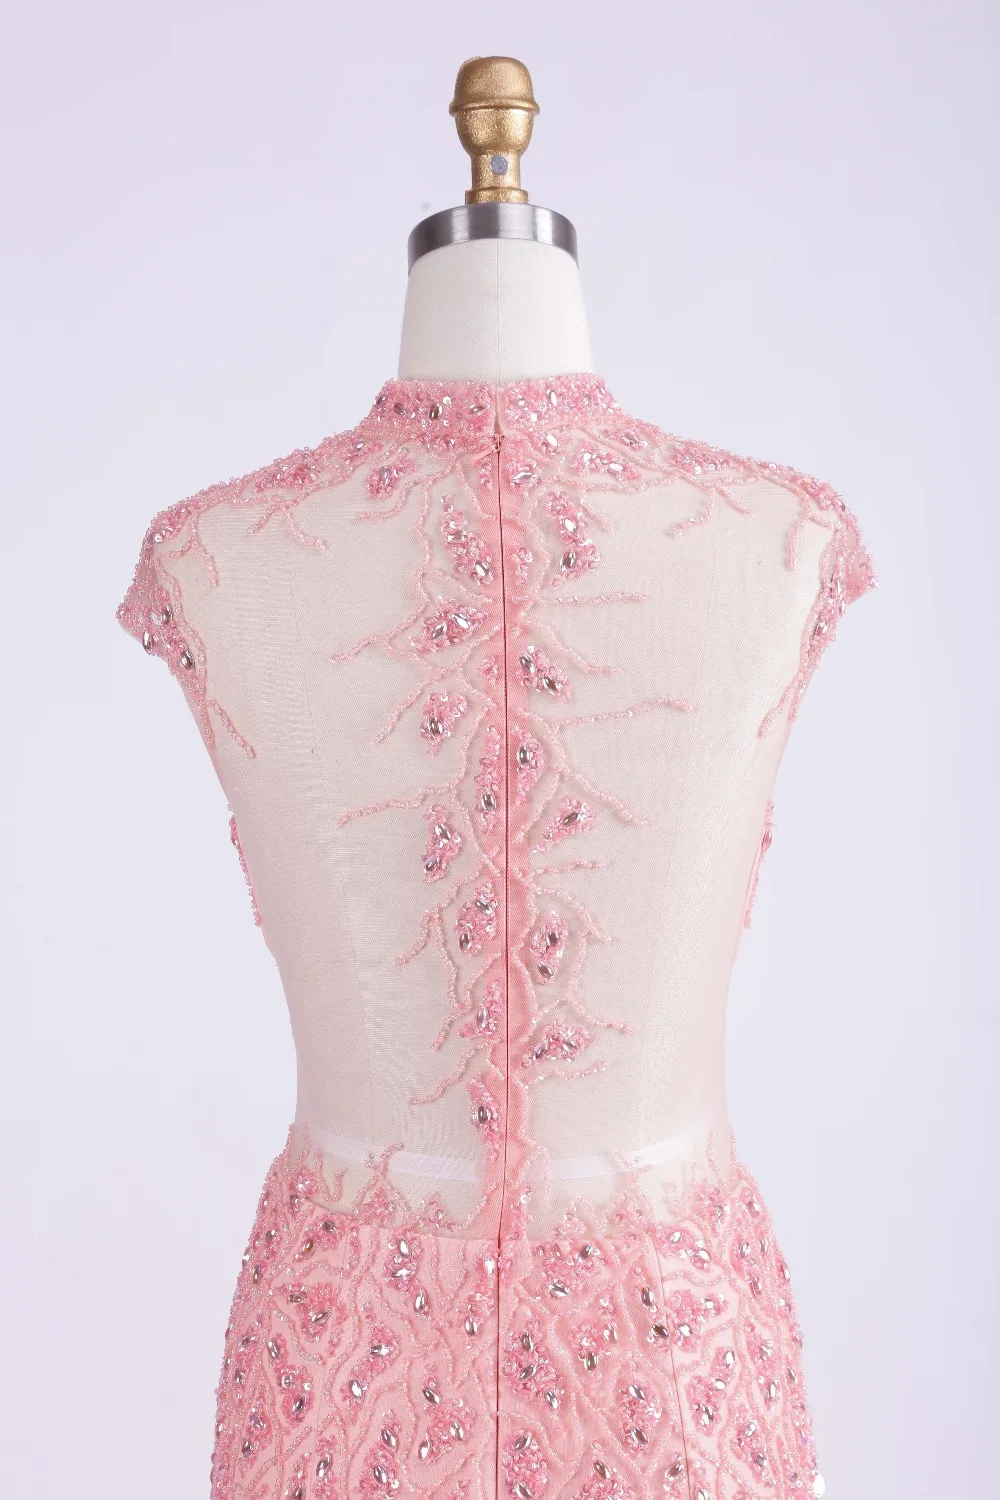 Finove, дизайн, модное розовое Тюлевое платье-Русалка с высокой горловиной, прозрачная спина, бисероплетение, вечерние платья, Длинные вечерние платья